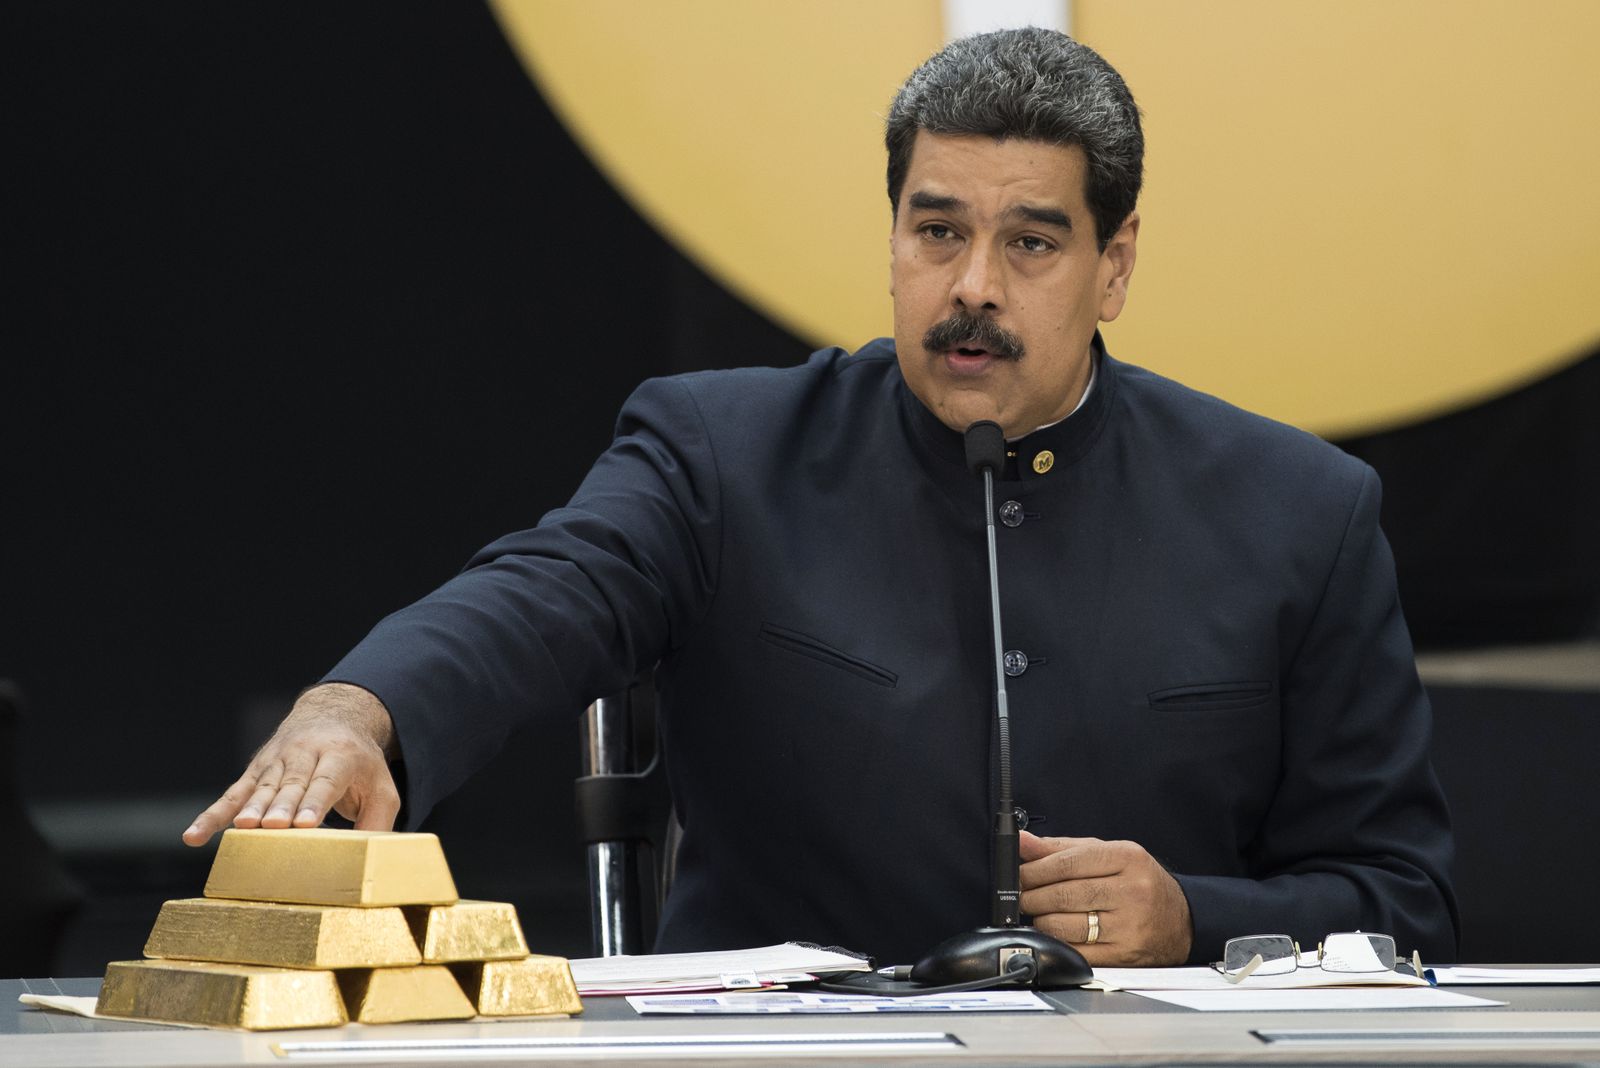 Venezuela ngồi trên mỏ vàng khổng lồ 8.000 tấn? - 1